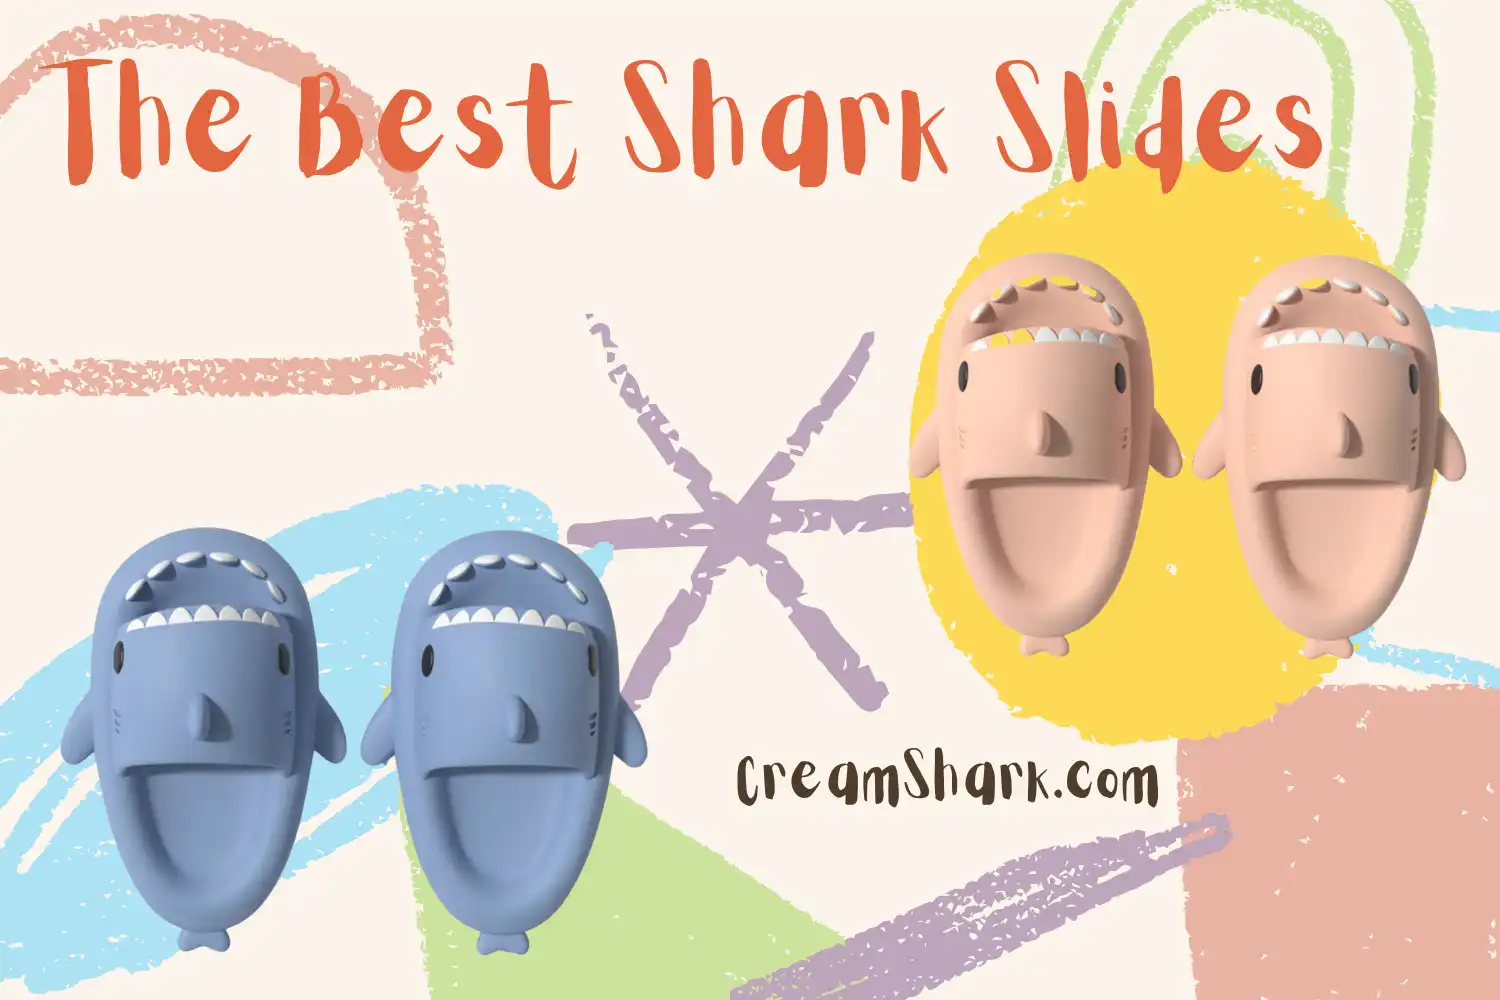 The Best Shark Slides